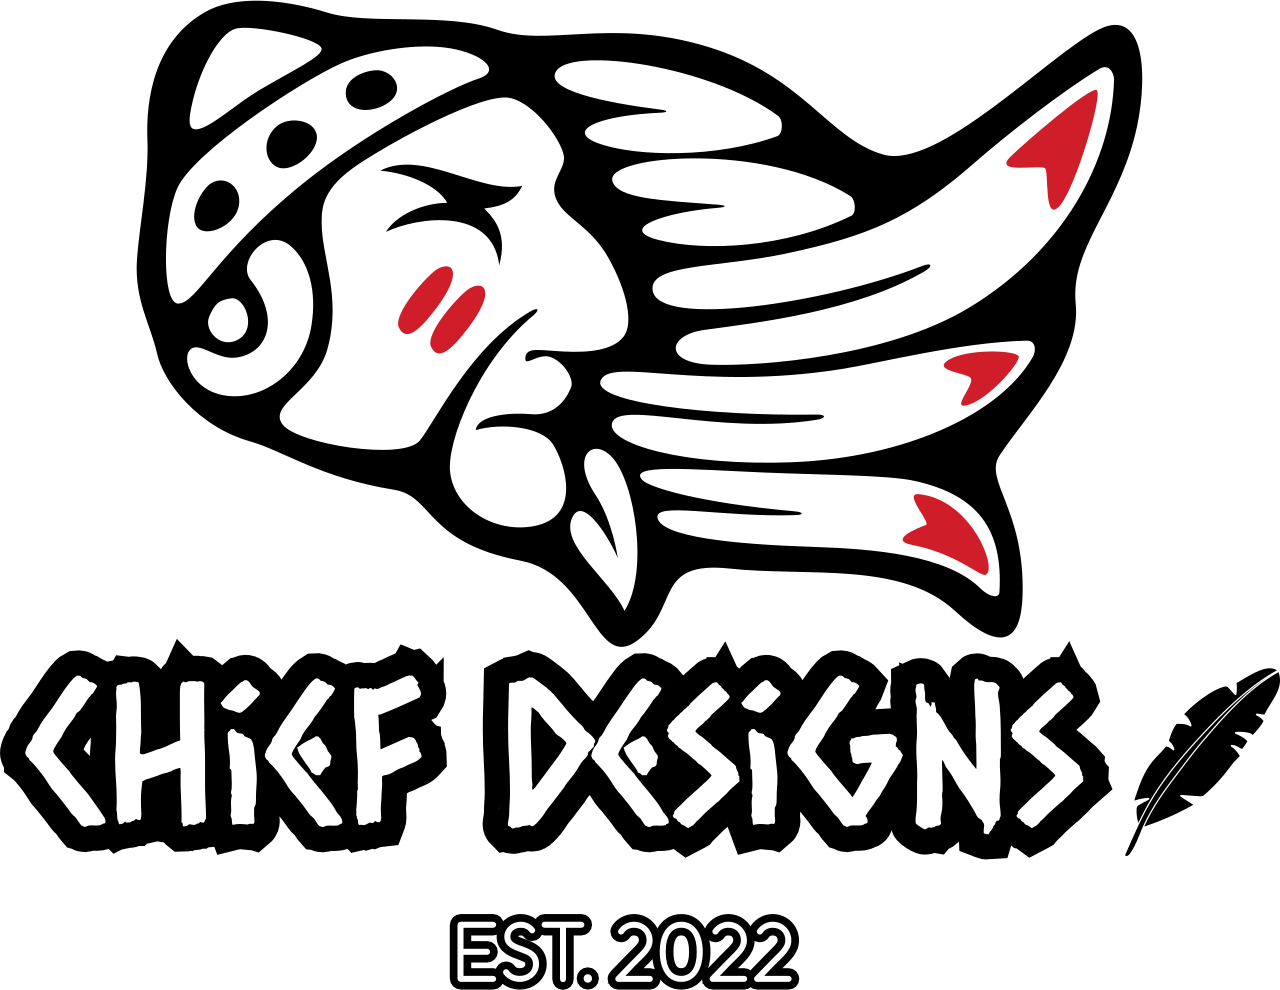 Chief Designs's web page